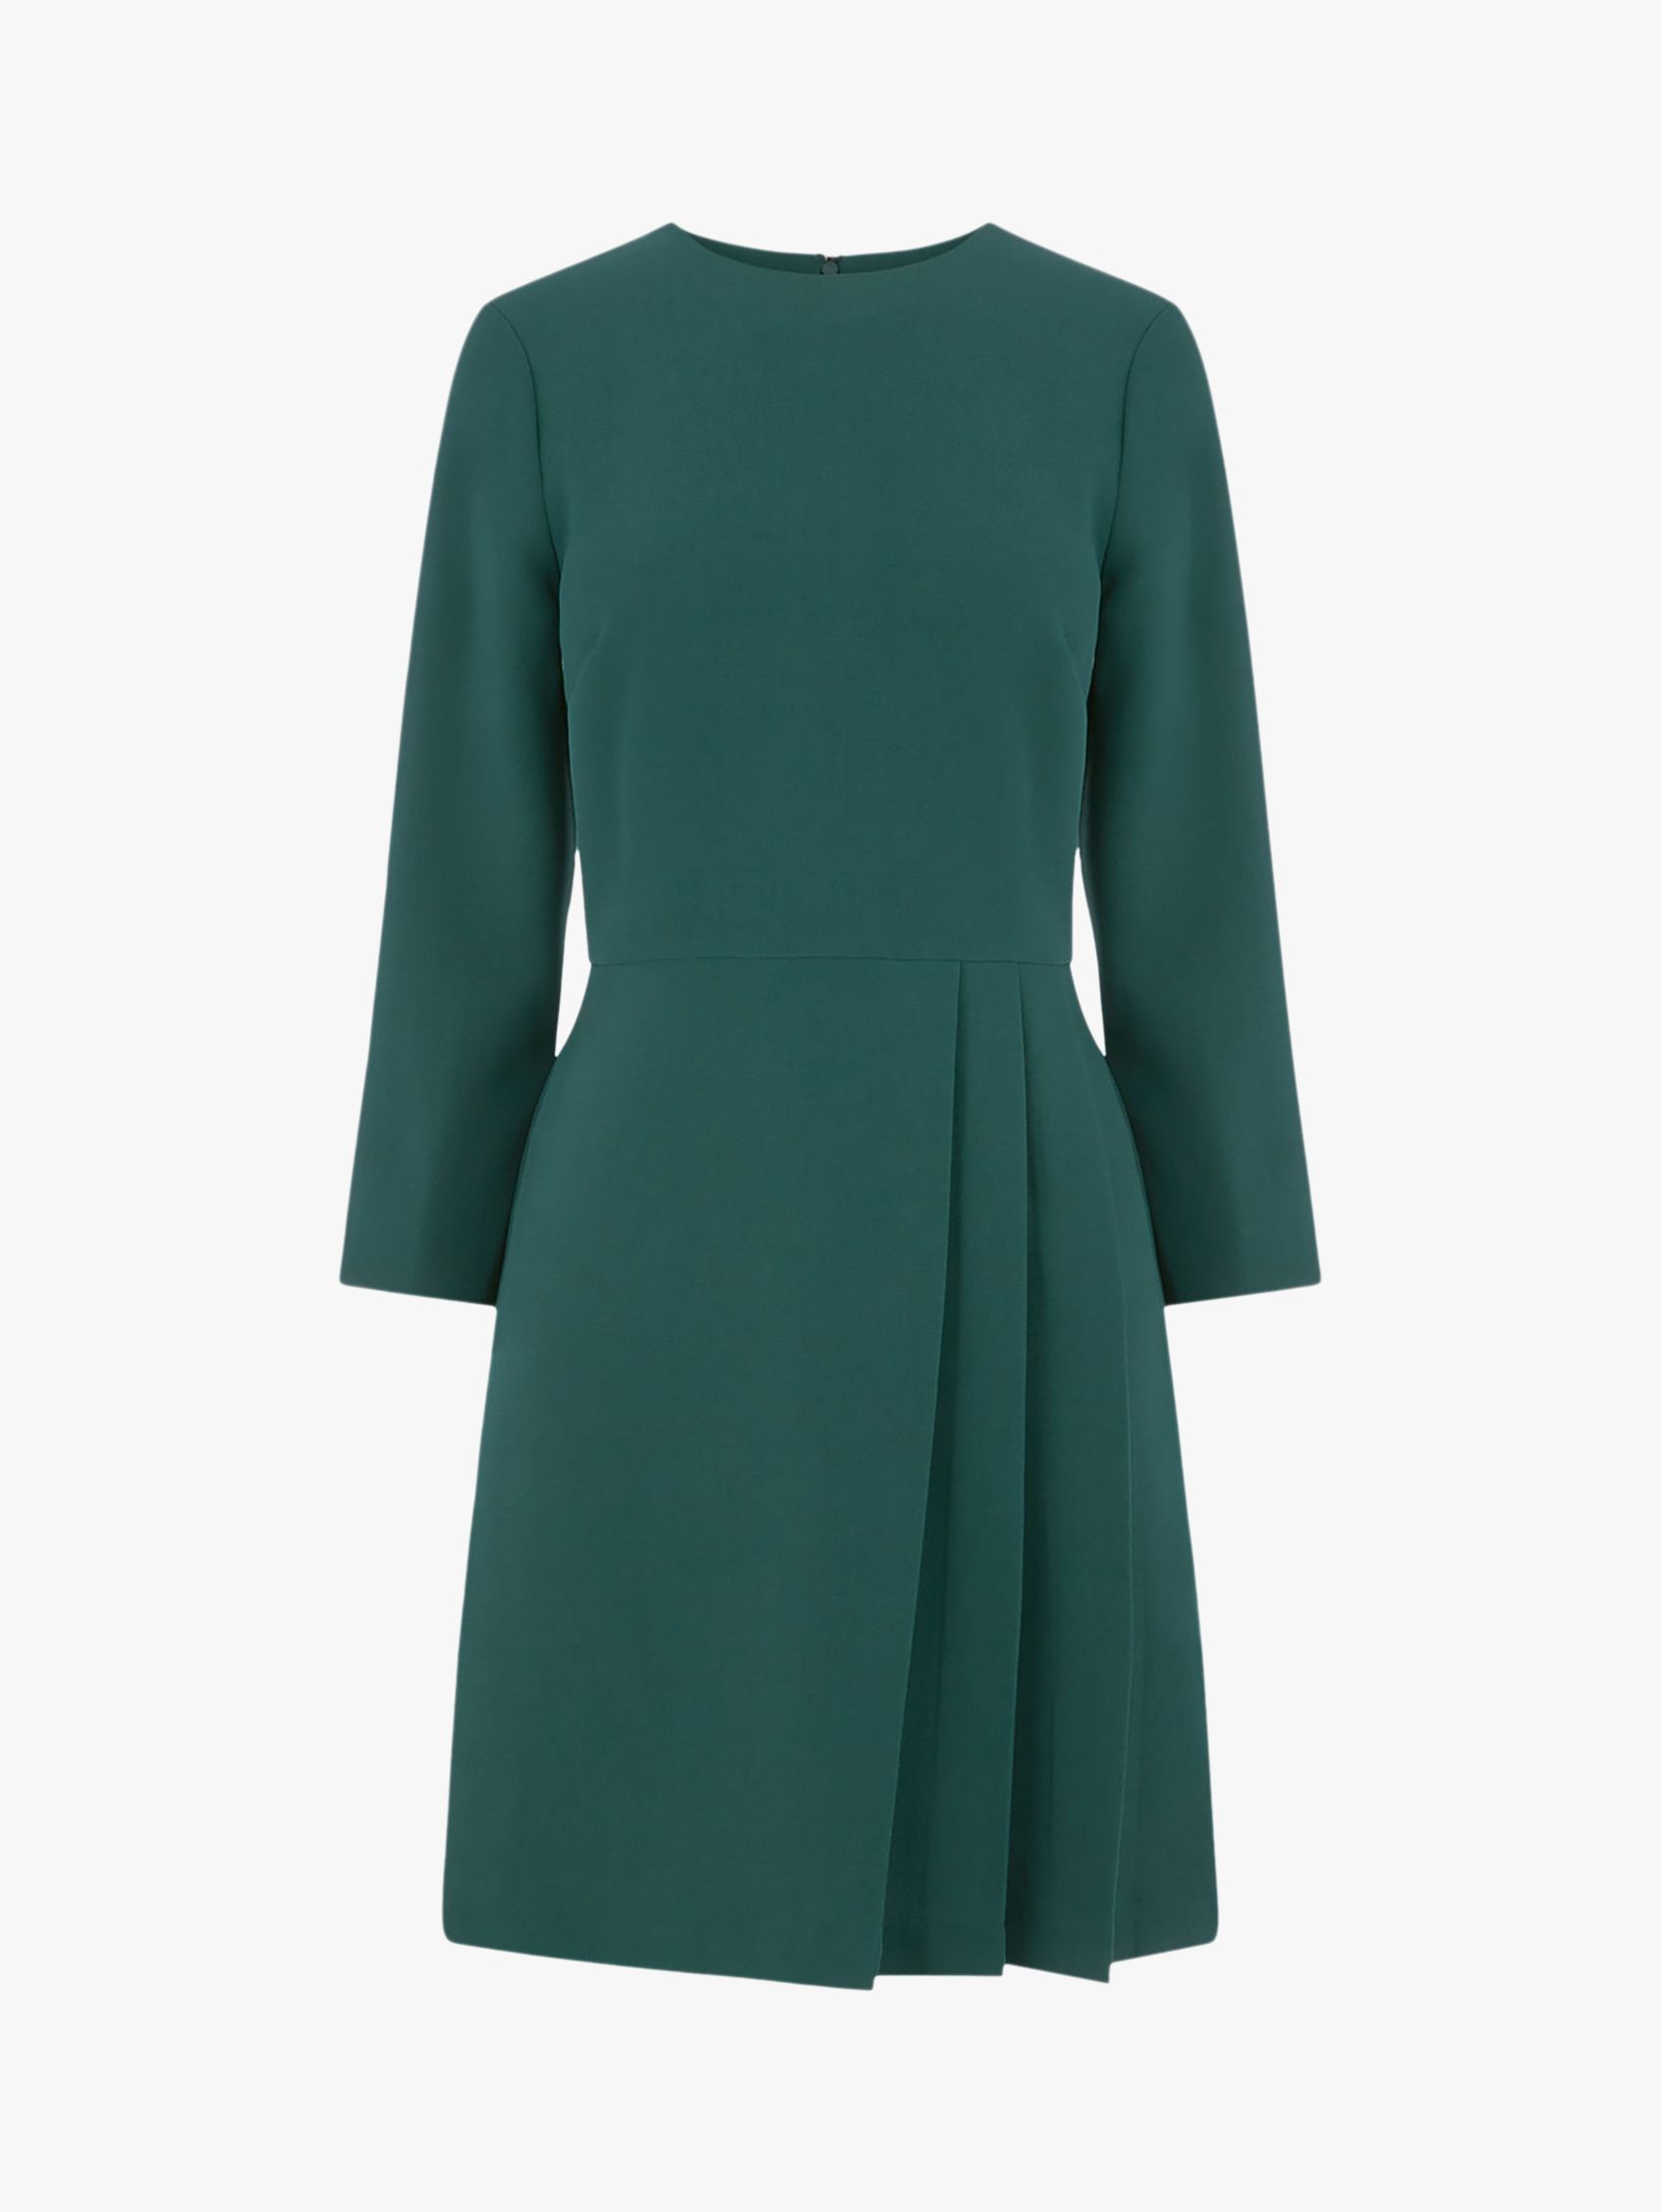 Warehouse Kilt Pleated Mini Dress, Dark Green